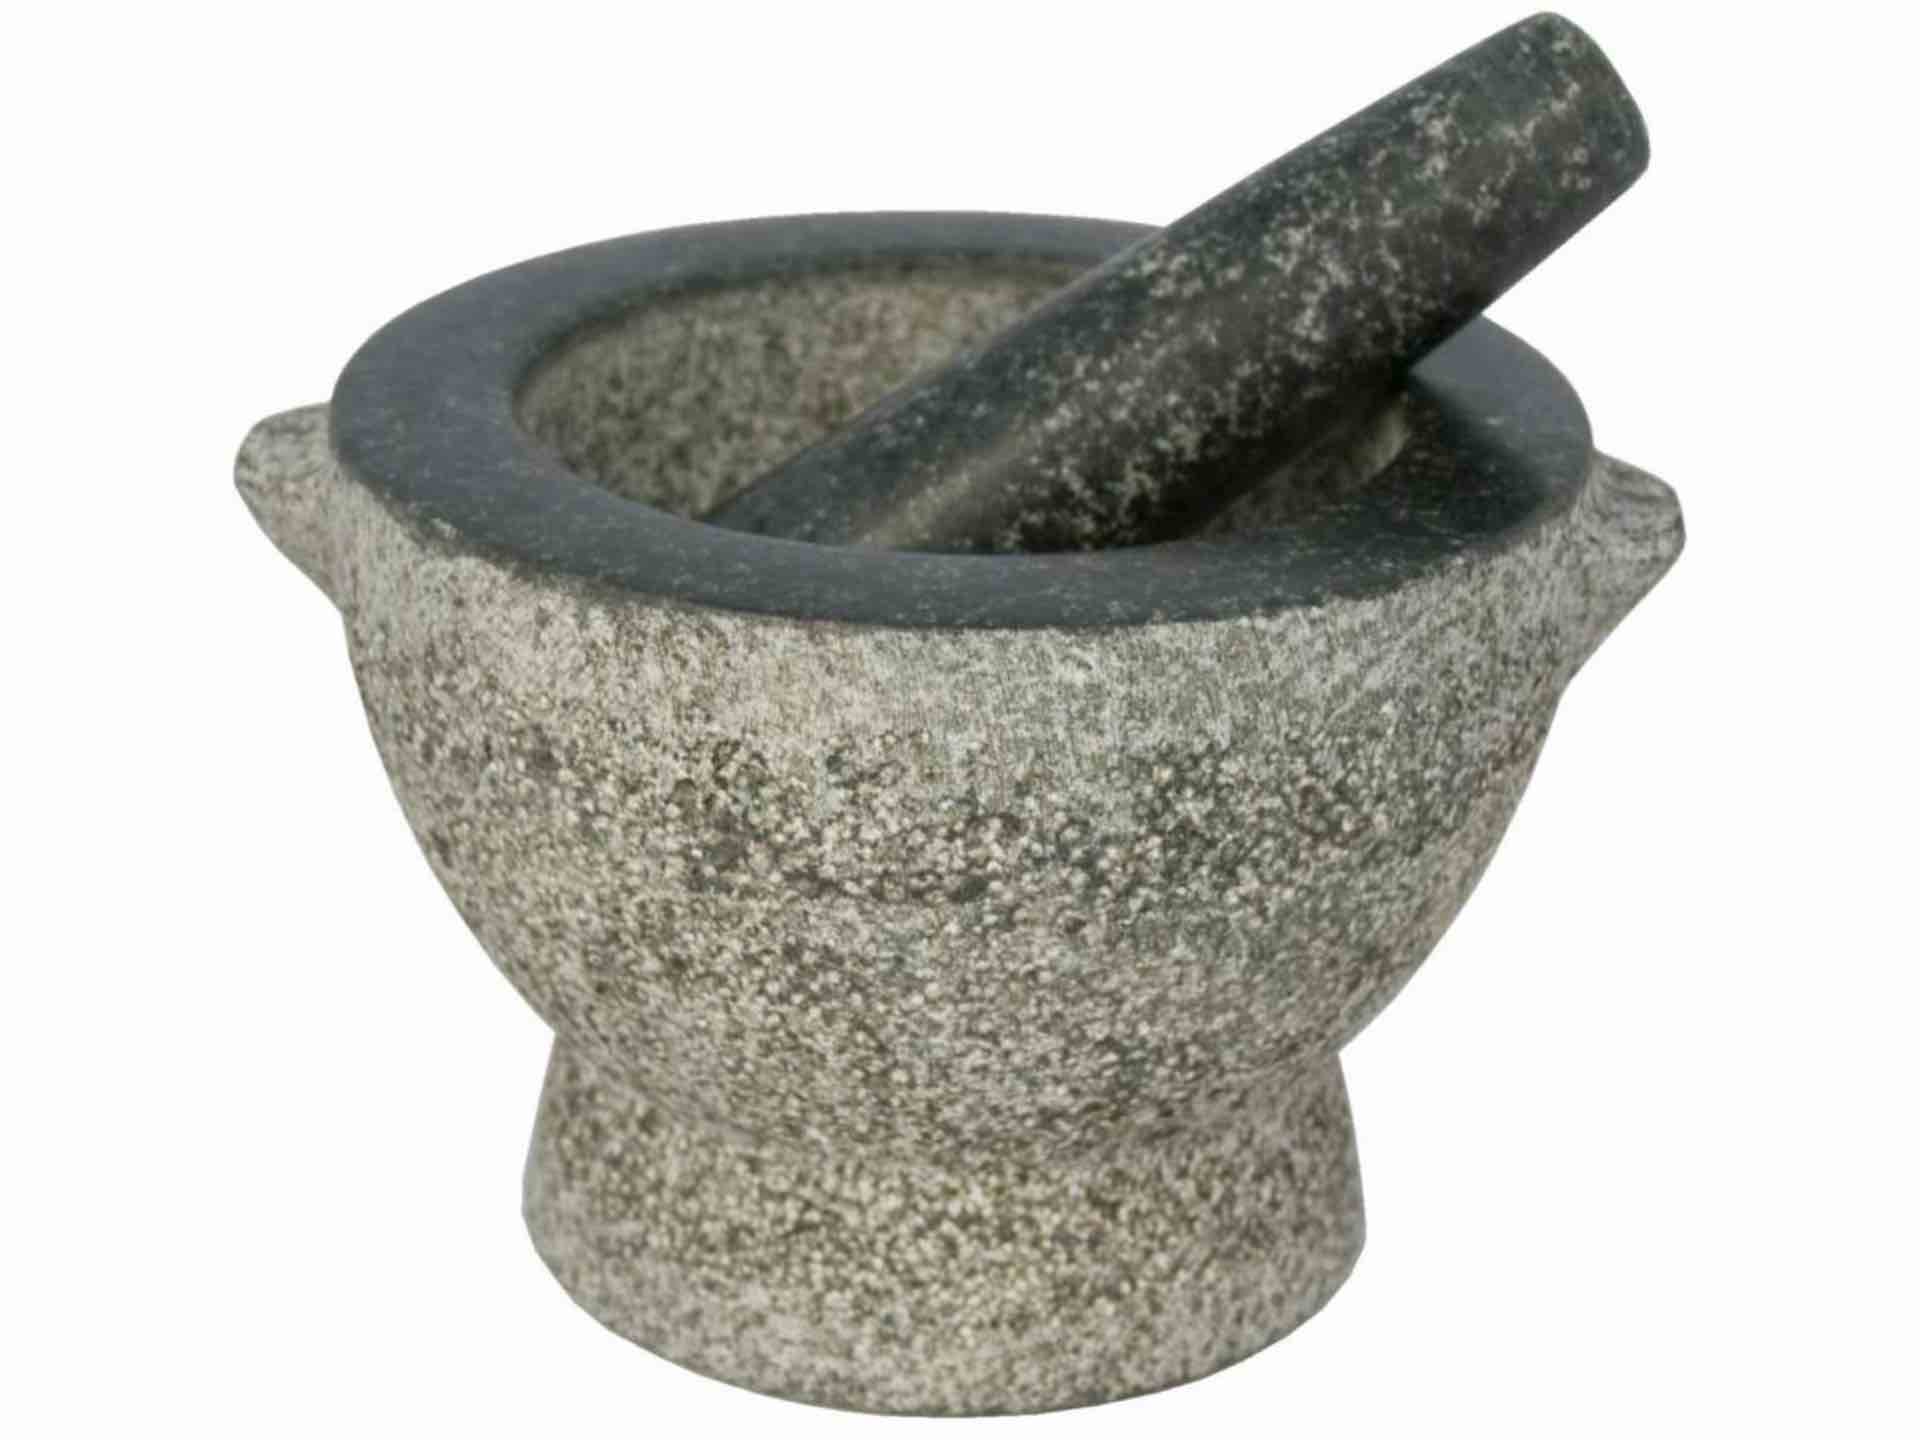 Libertyware's granite mortar and pestle. ($21)